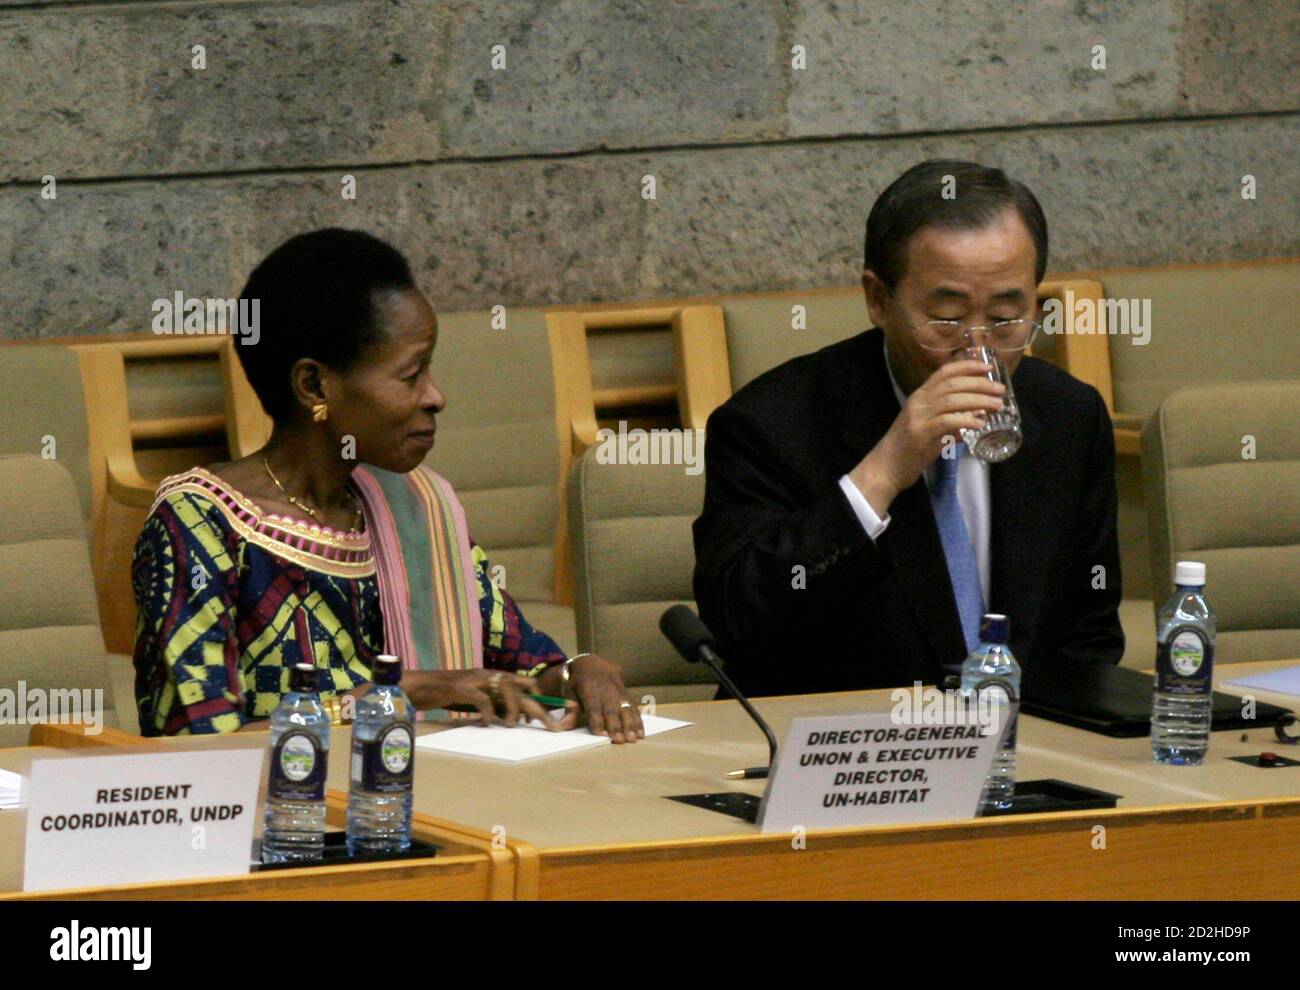 Il Segretario Generale delle Nazioni Unite Ban Ki-Moon (R) prende un drink mentre il Direttore Esecutivo del programma delle colonie umane delle Nazioni Unite Anna Tibaijuka guarda durante un incontro con lo staff delle Nazioni Unite presso l'ufficio di Gigiri a Nairobi il 31 gennaio 2007. REUTERS/Thomas Mukoya (KENYA) Foto Stock